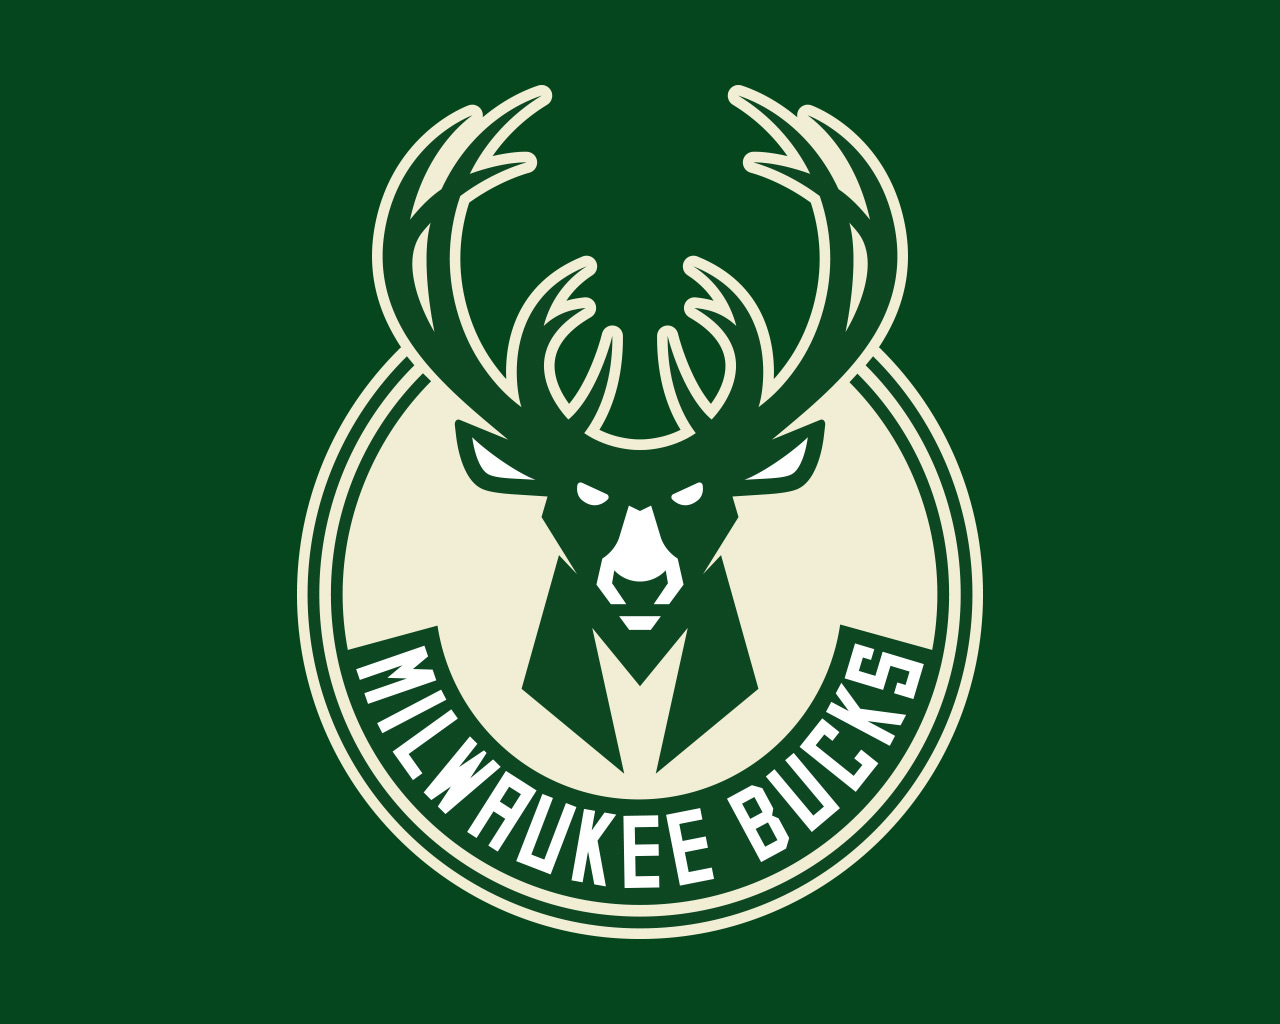 Bucks Background And Wallpaper Milwaukee